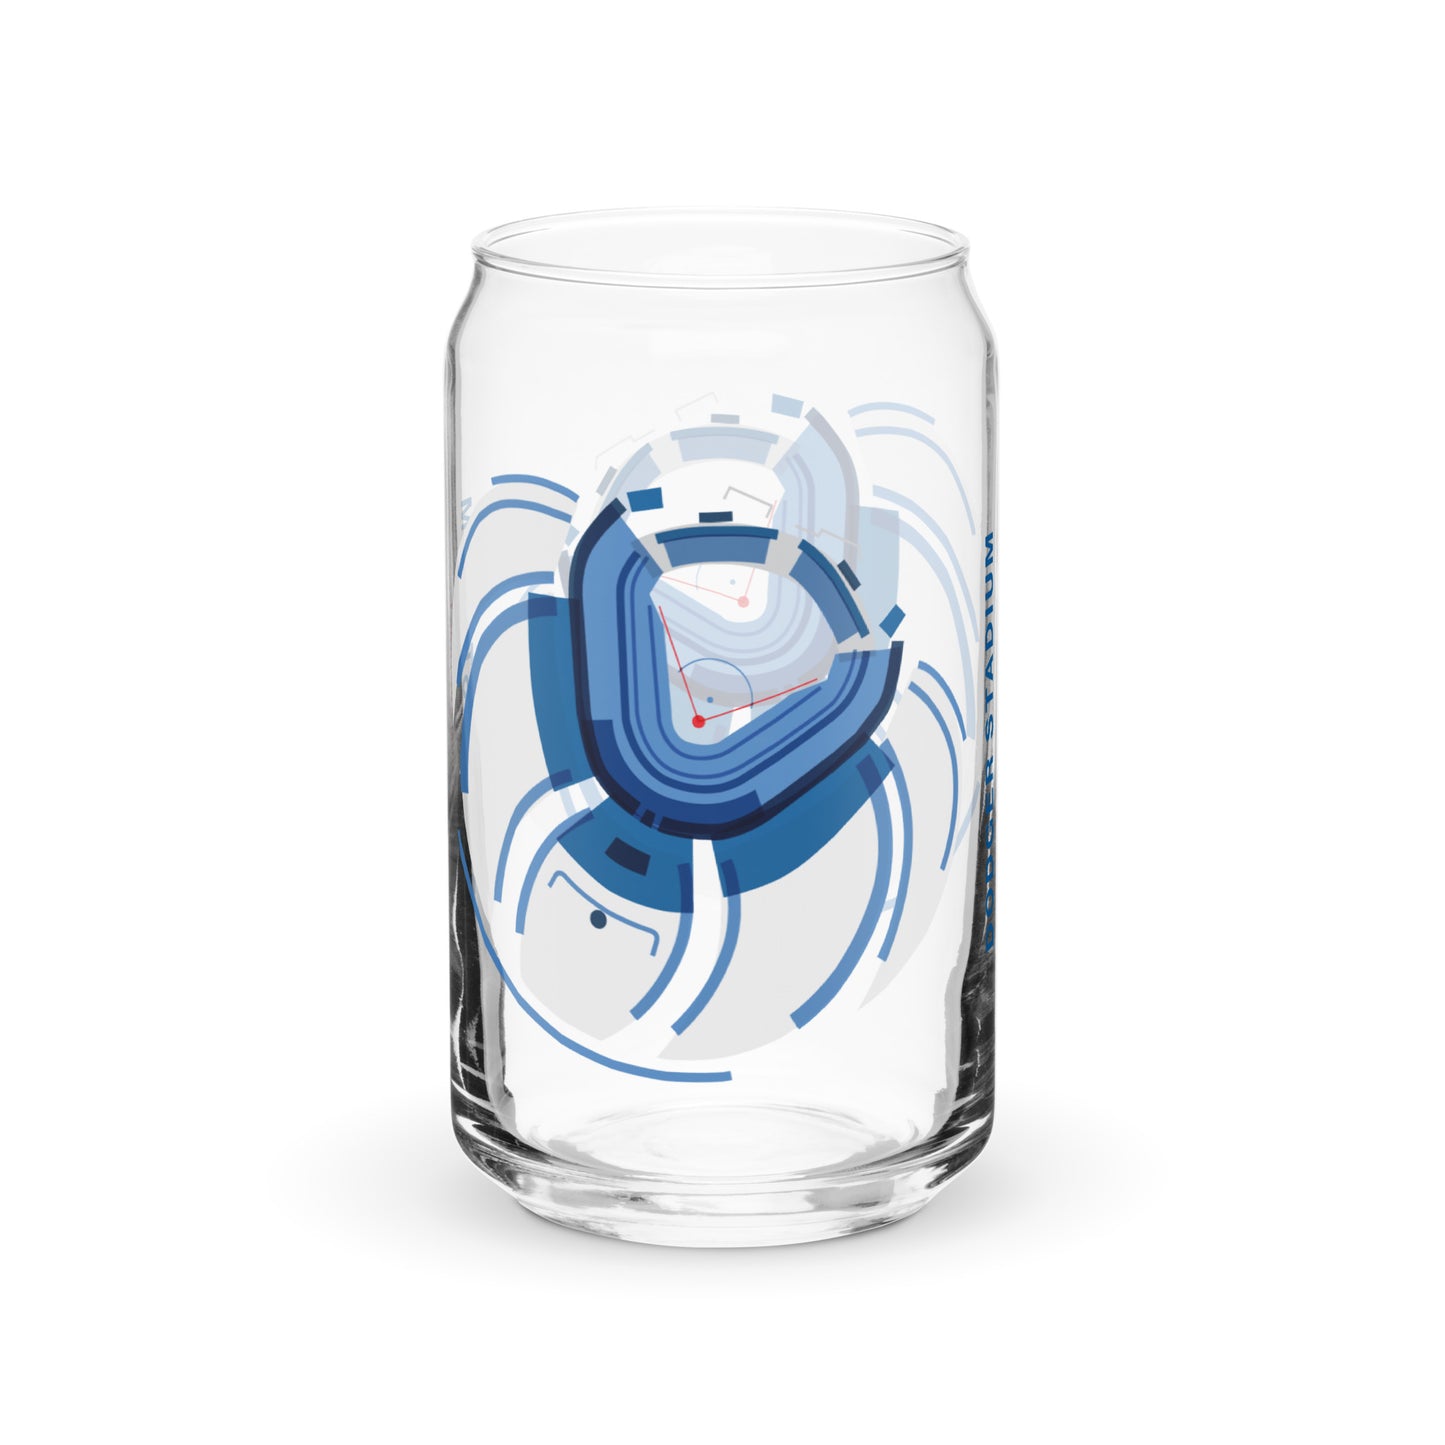 LA Dodgers | Can-shaped glass